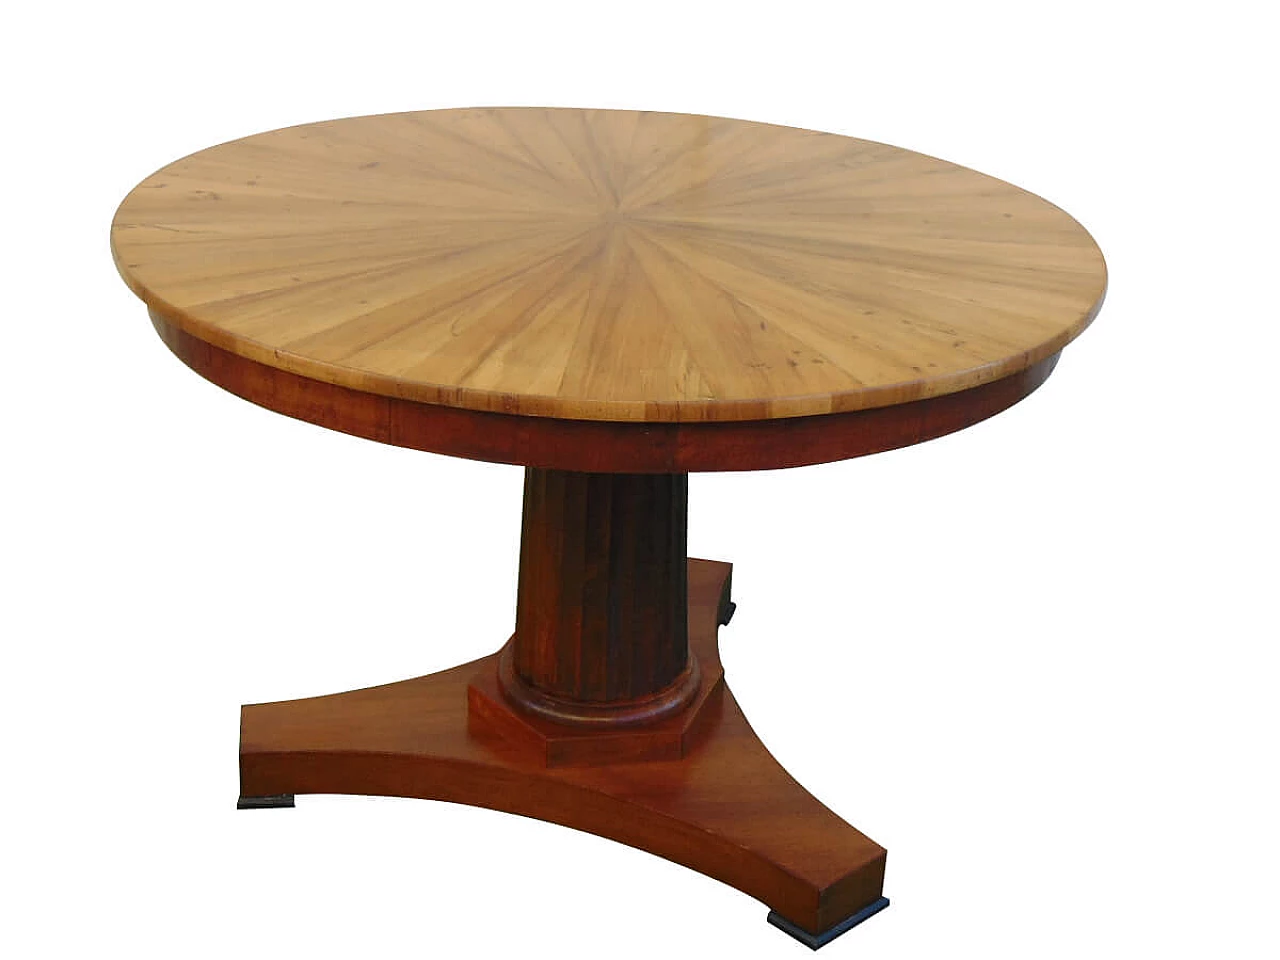 Empire period table in walnut, 19th century 1169027